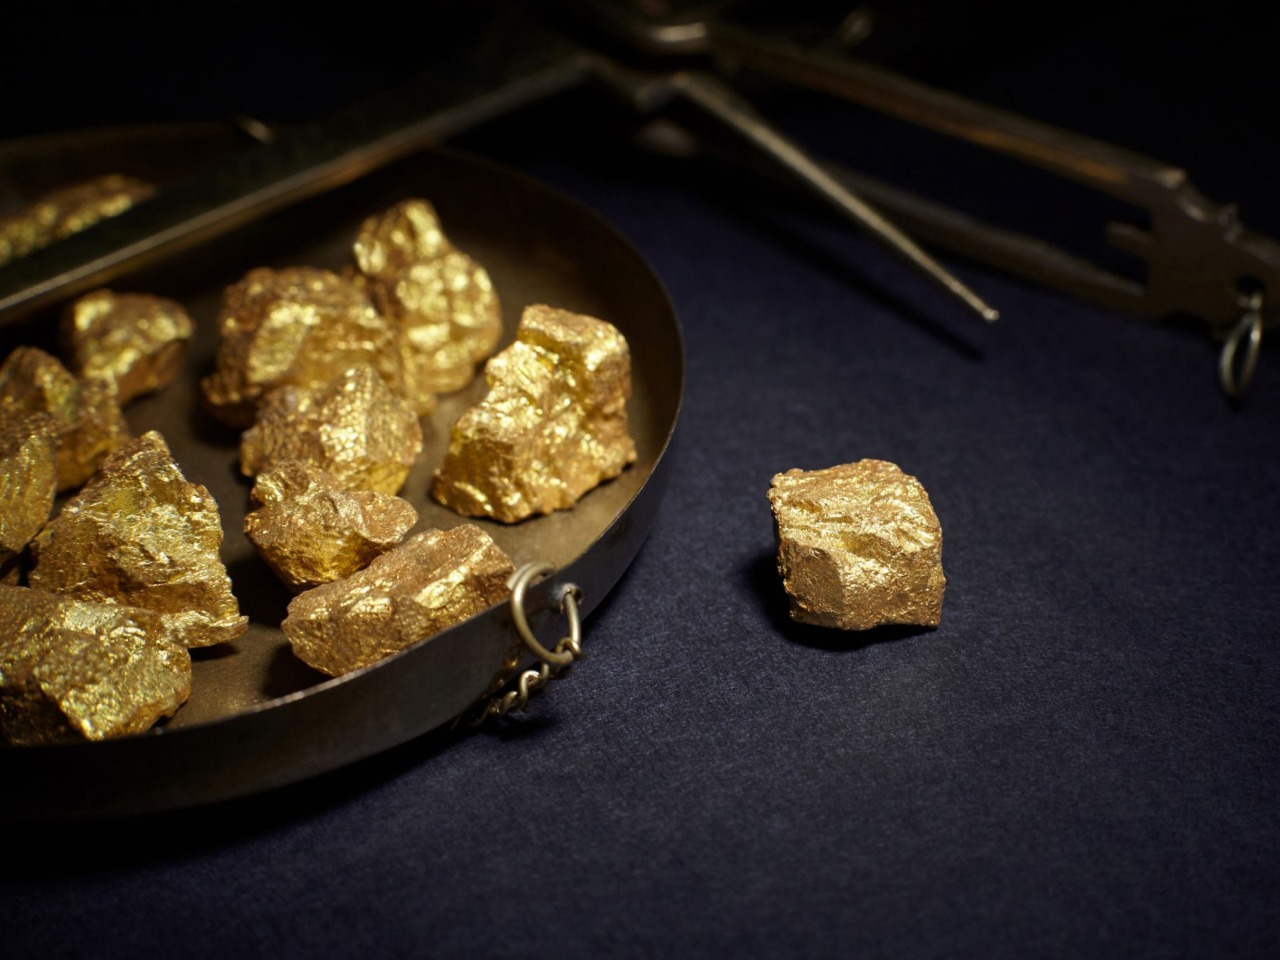 Берёзовский — центр добычи золота | Цена 5400₽, отзывы, описание экскурсии